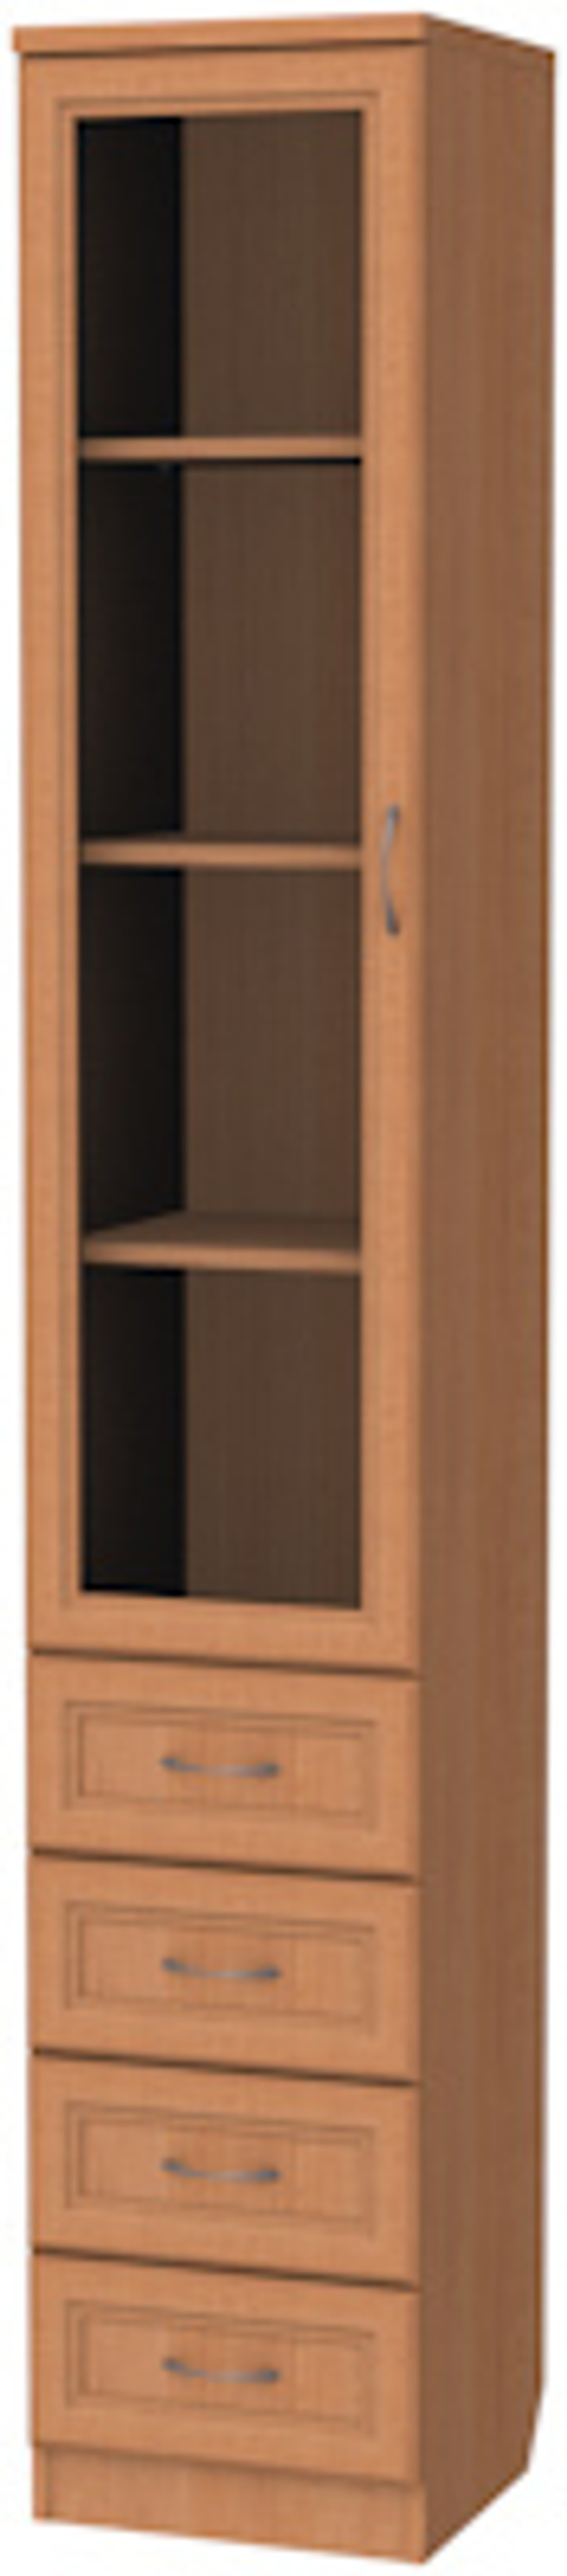 Шкаф для книг с ящиками узкий АРТ205